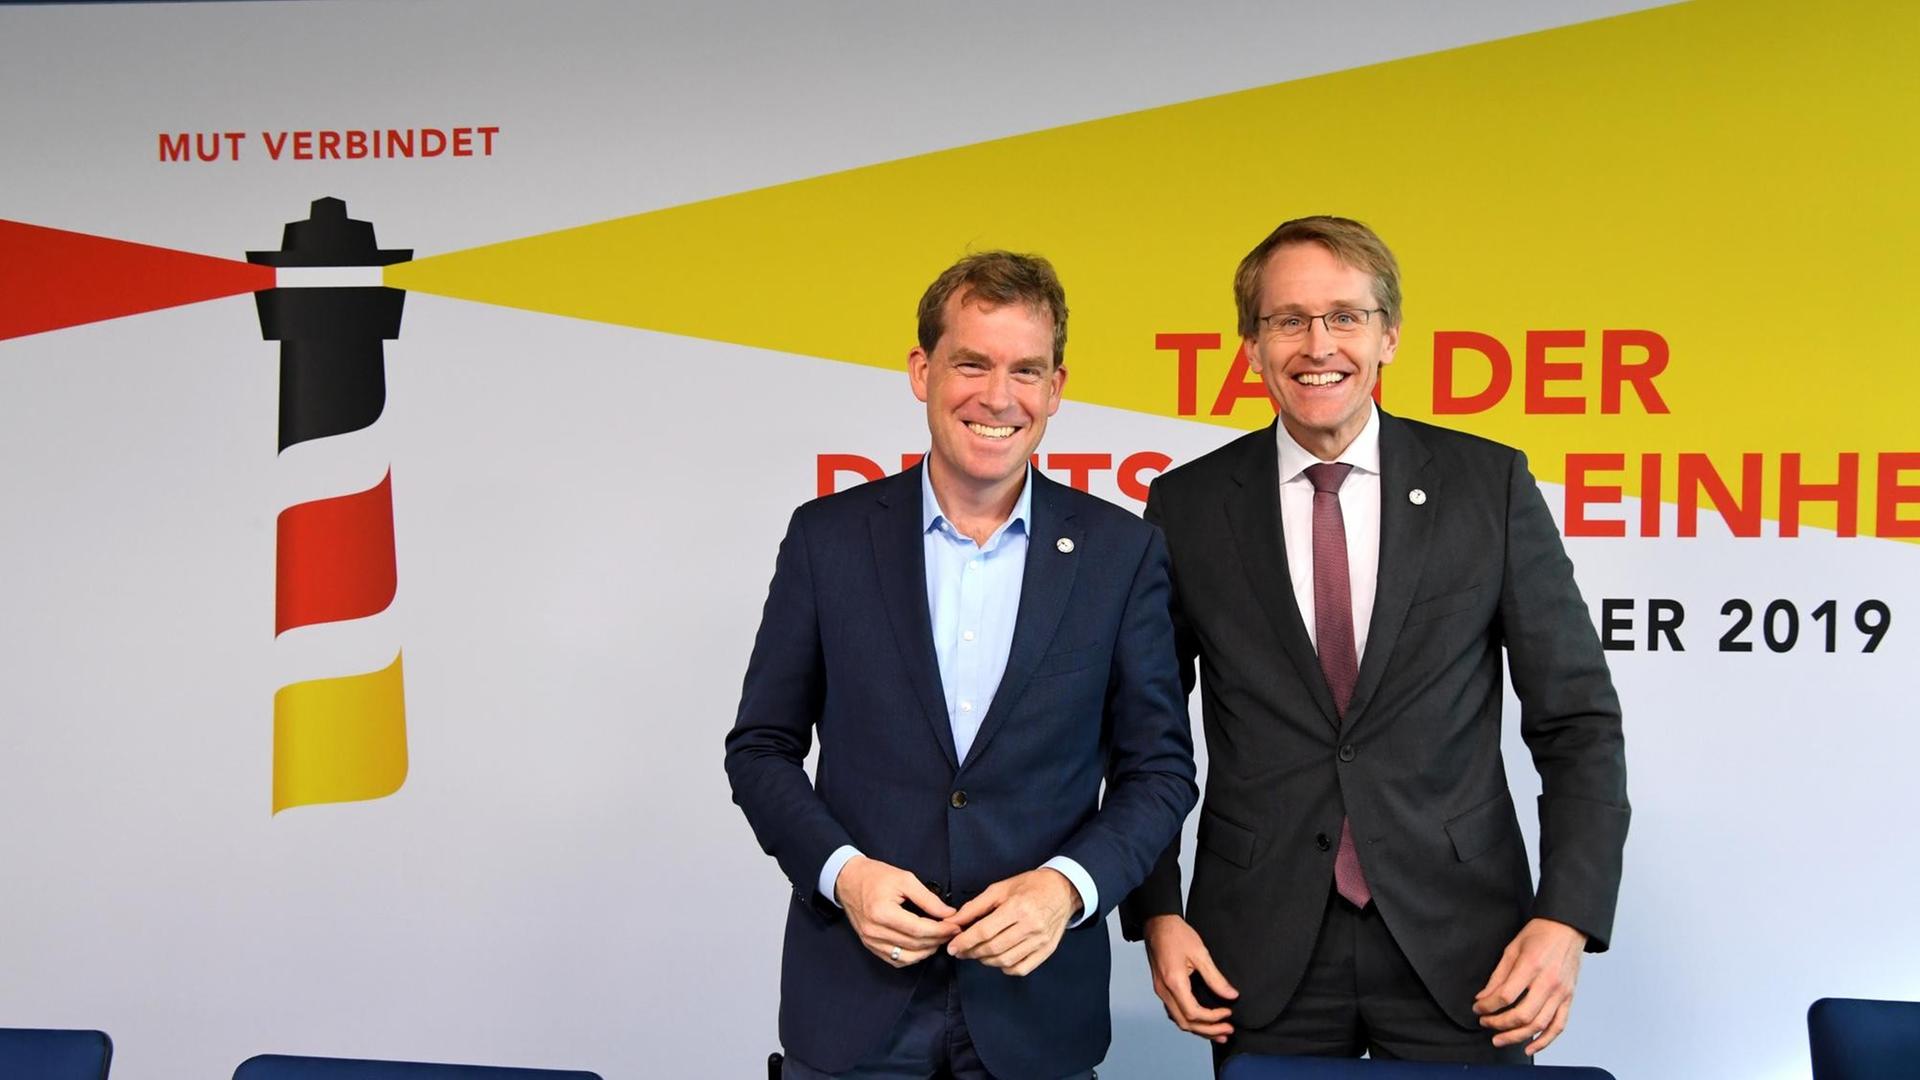 Ulf Kämpfer (SPD), der Kieler Oberbürgermeister, und Daniel Günther (CDU), Ministerpräsident von Schleswig-Holstein, präsentieren das Programm für den Tag der Einheit am 3. Oktober in Kiel